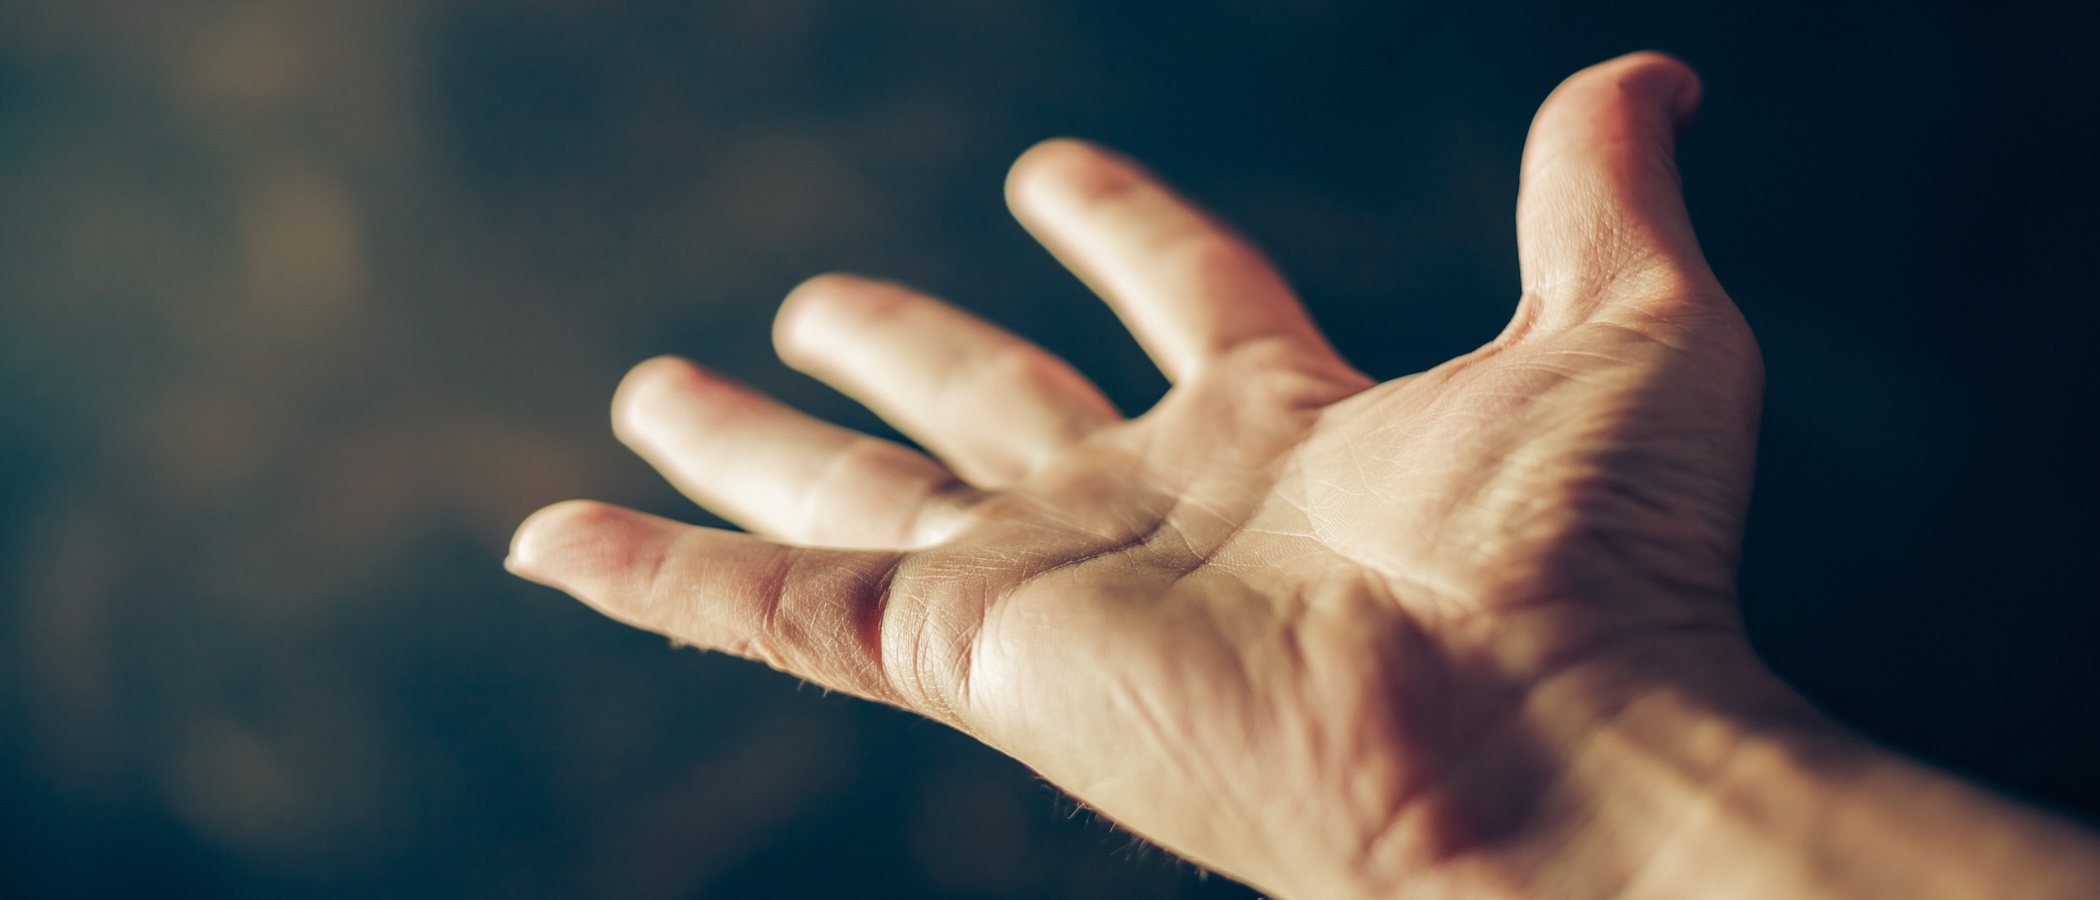 Quiromancia para principiantes: ¿Puedo aprender a leer la mano?